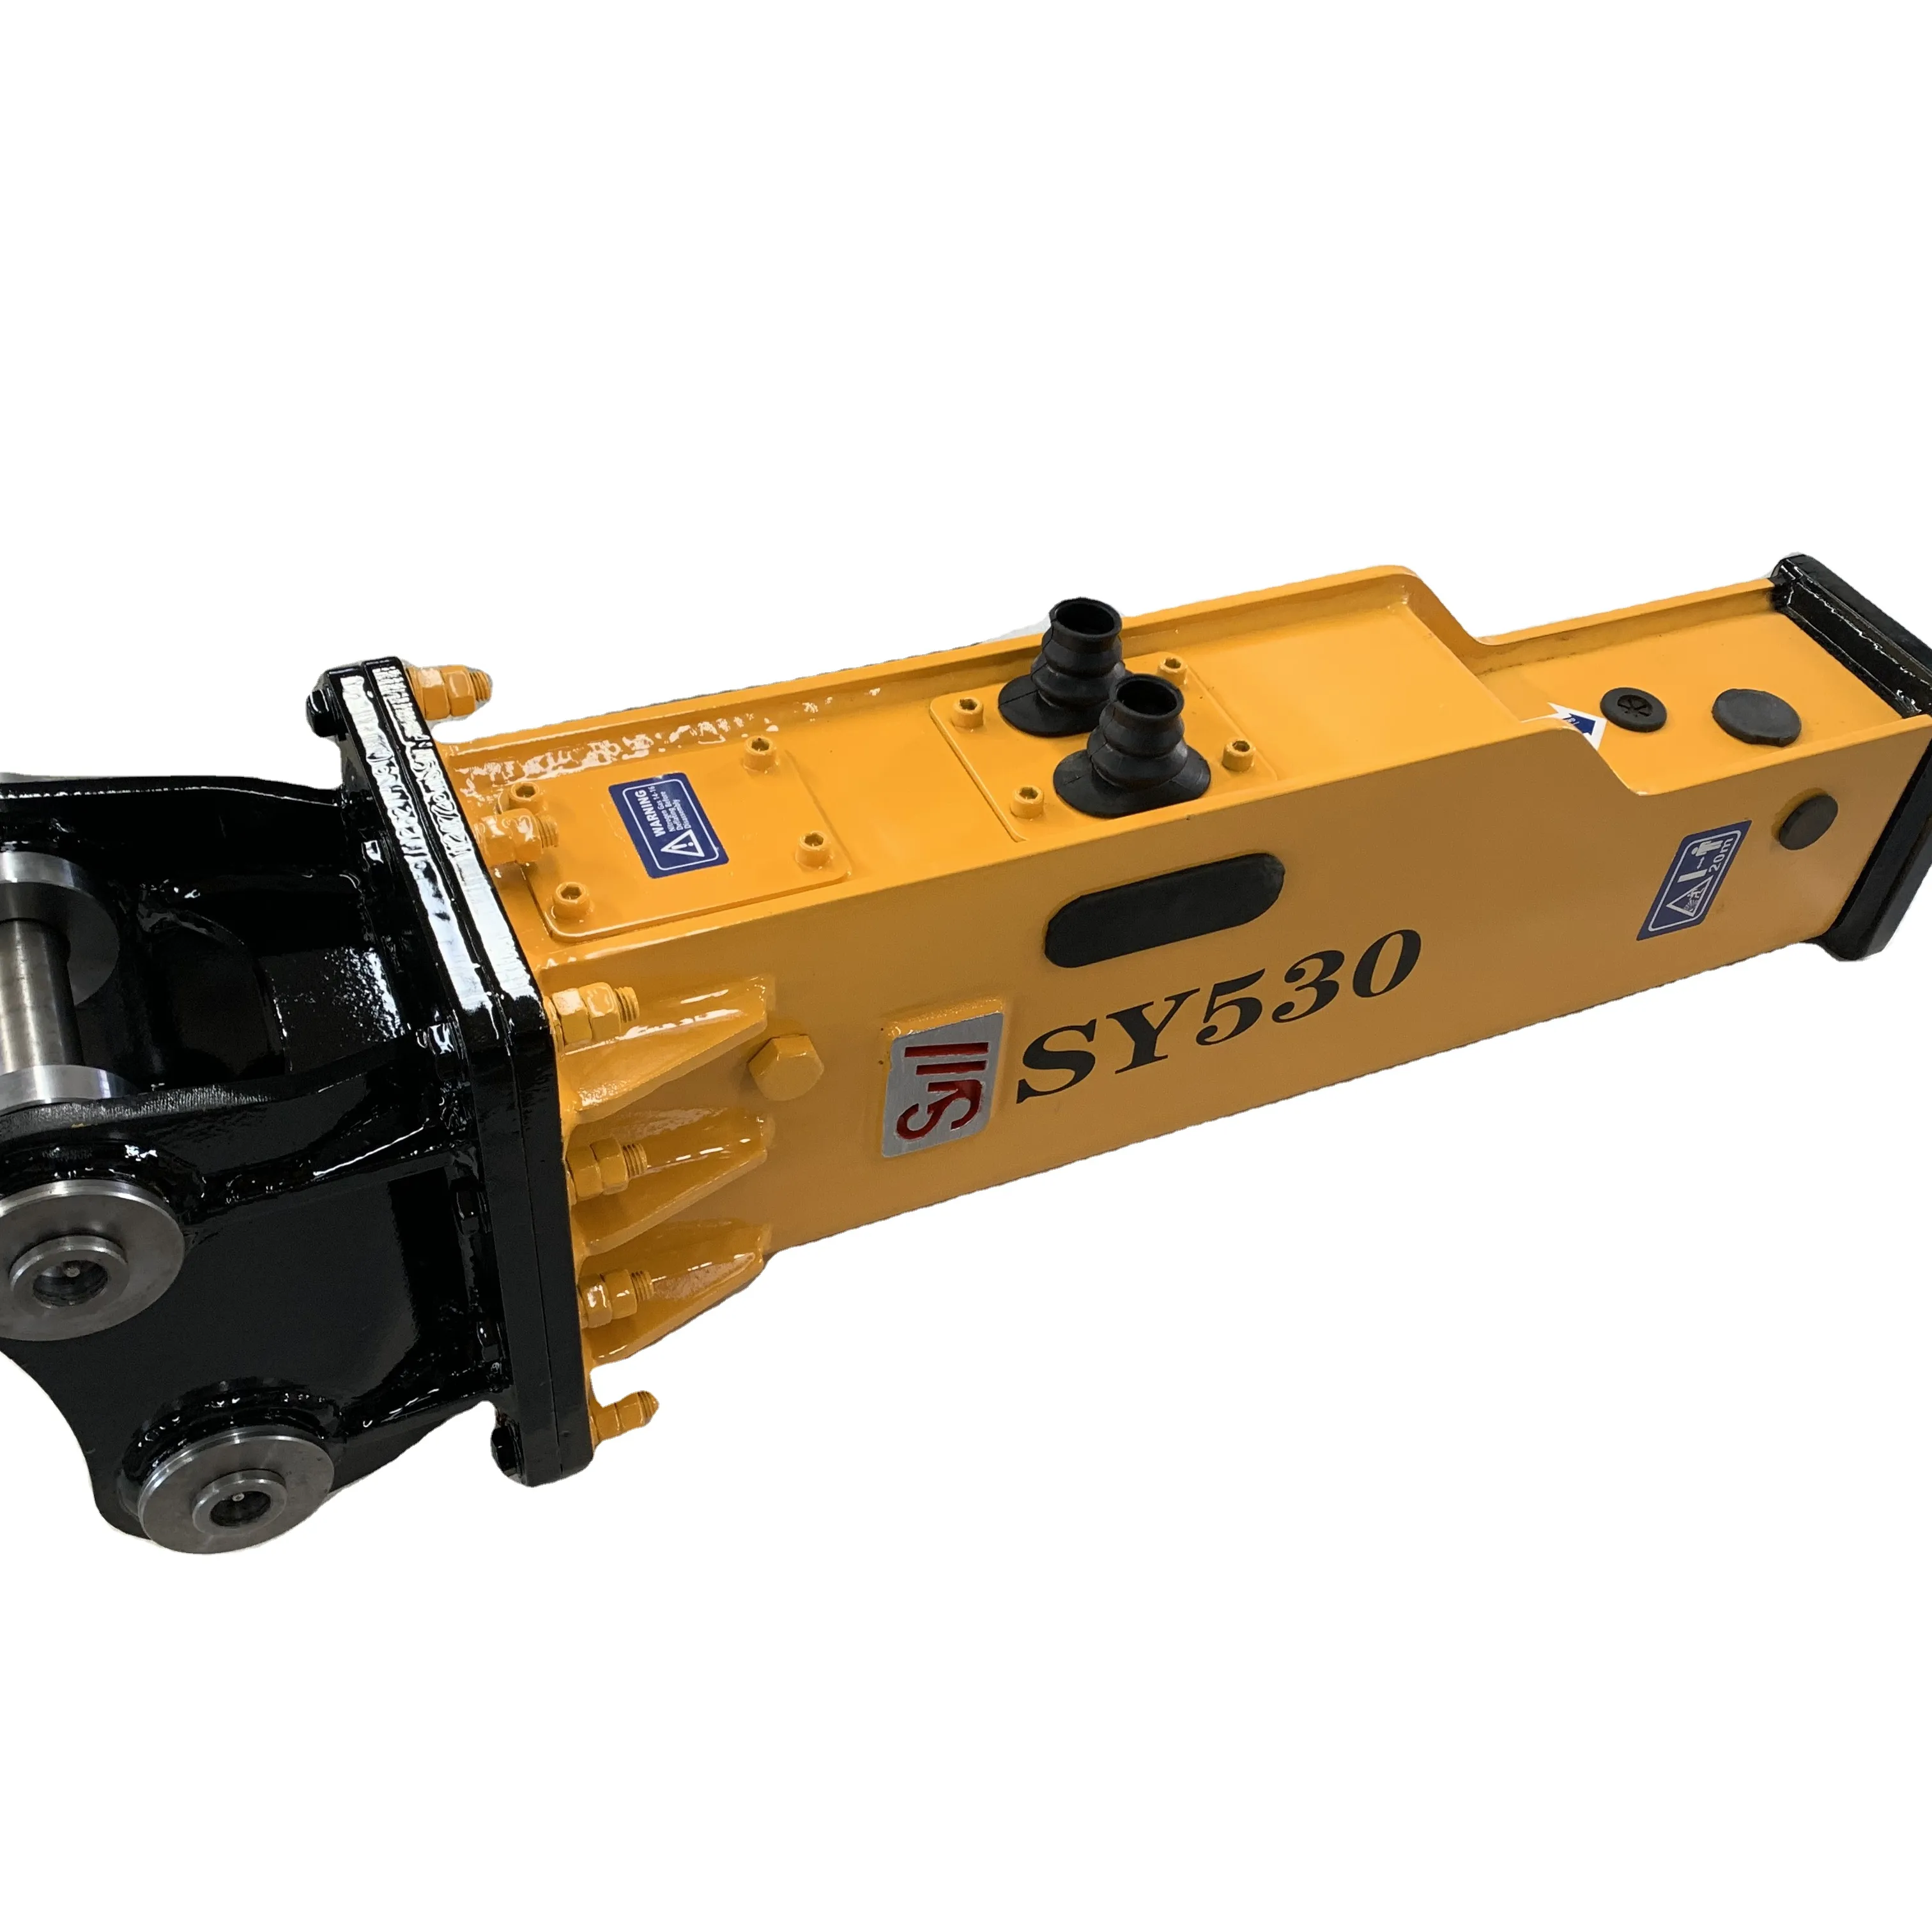 옌타이 산유 생산 공장 직영 유압 차단기 SILENCE SB30/SY530 2.0 4.5 굴삭기 장착